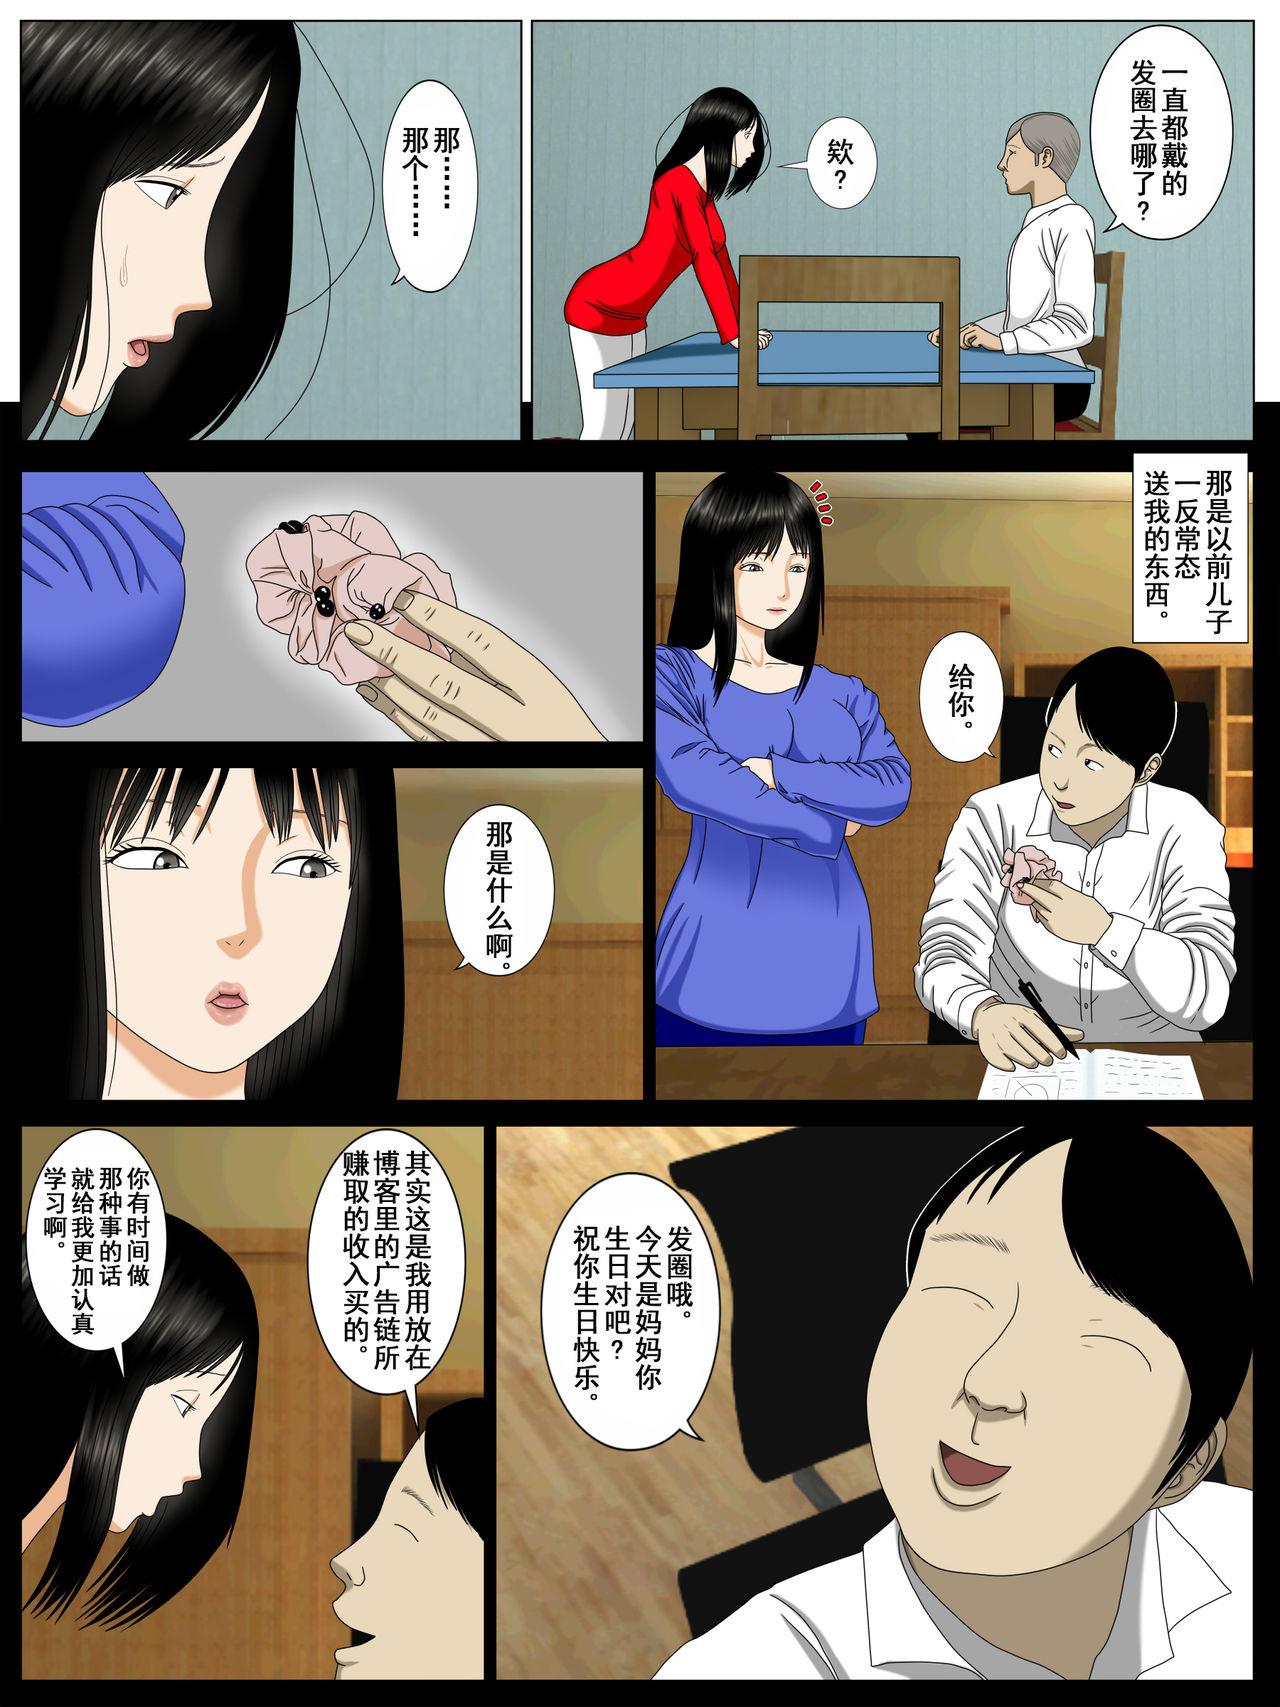 Musuko o Dame ni Shita no wa Watashi no Karada deshita. | What Made the Son Useless was his Mother's Body 40